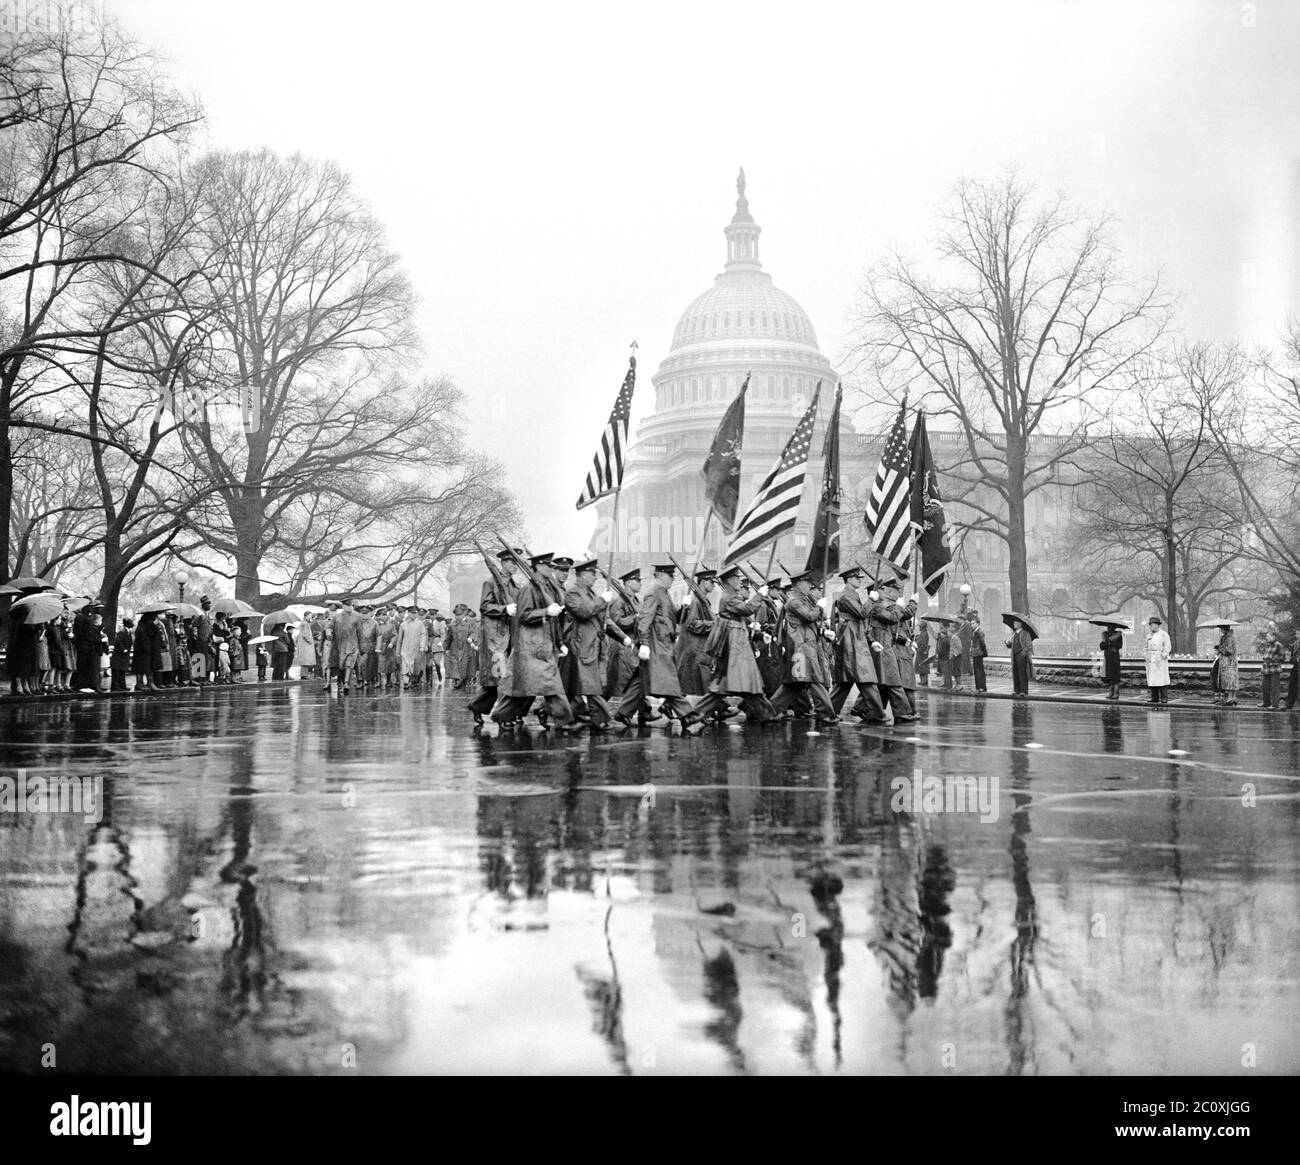 Parade zum Armeetag am 22. Jahrestag des Eintritts der USA in den Ersten Weltkrieg, Washington, D.C., USA, Harris & Ewing, 6. April 1939 Stockfoto